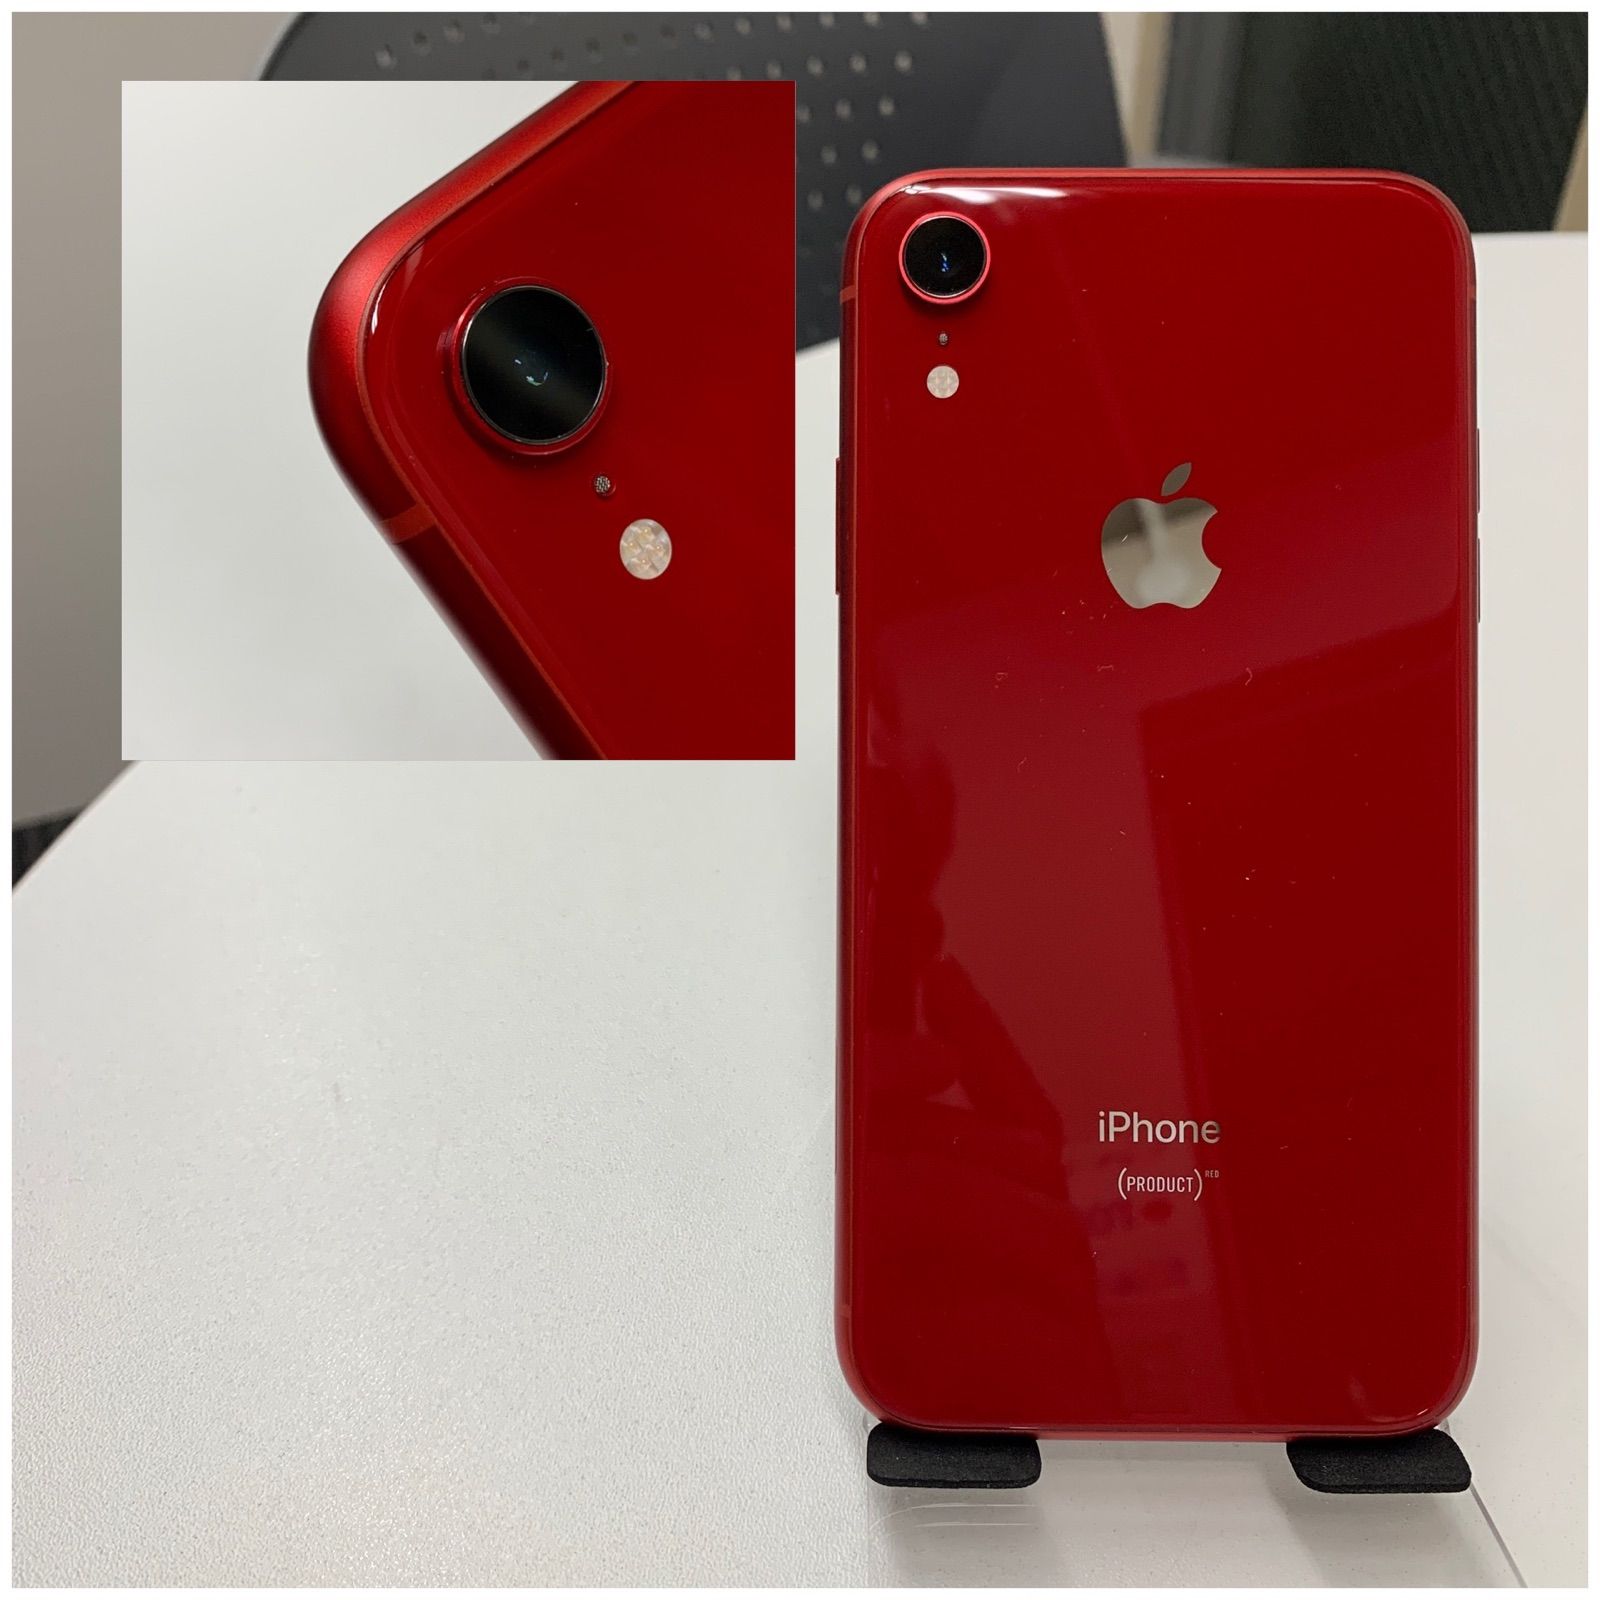 SIMフリー iPhone XR 64GB Product Red Bt 88% - メルカリ